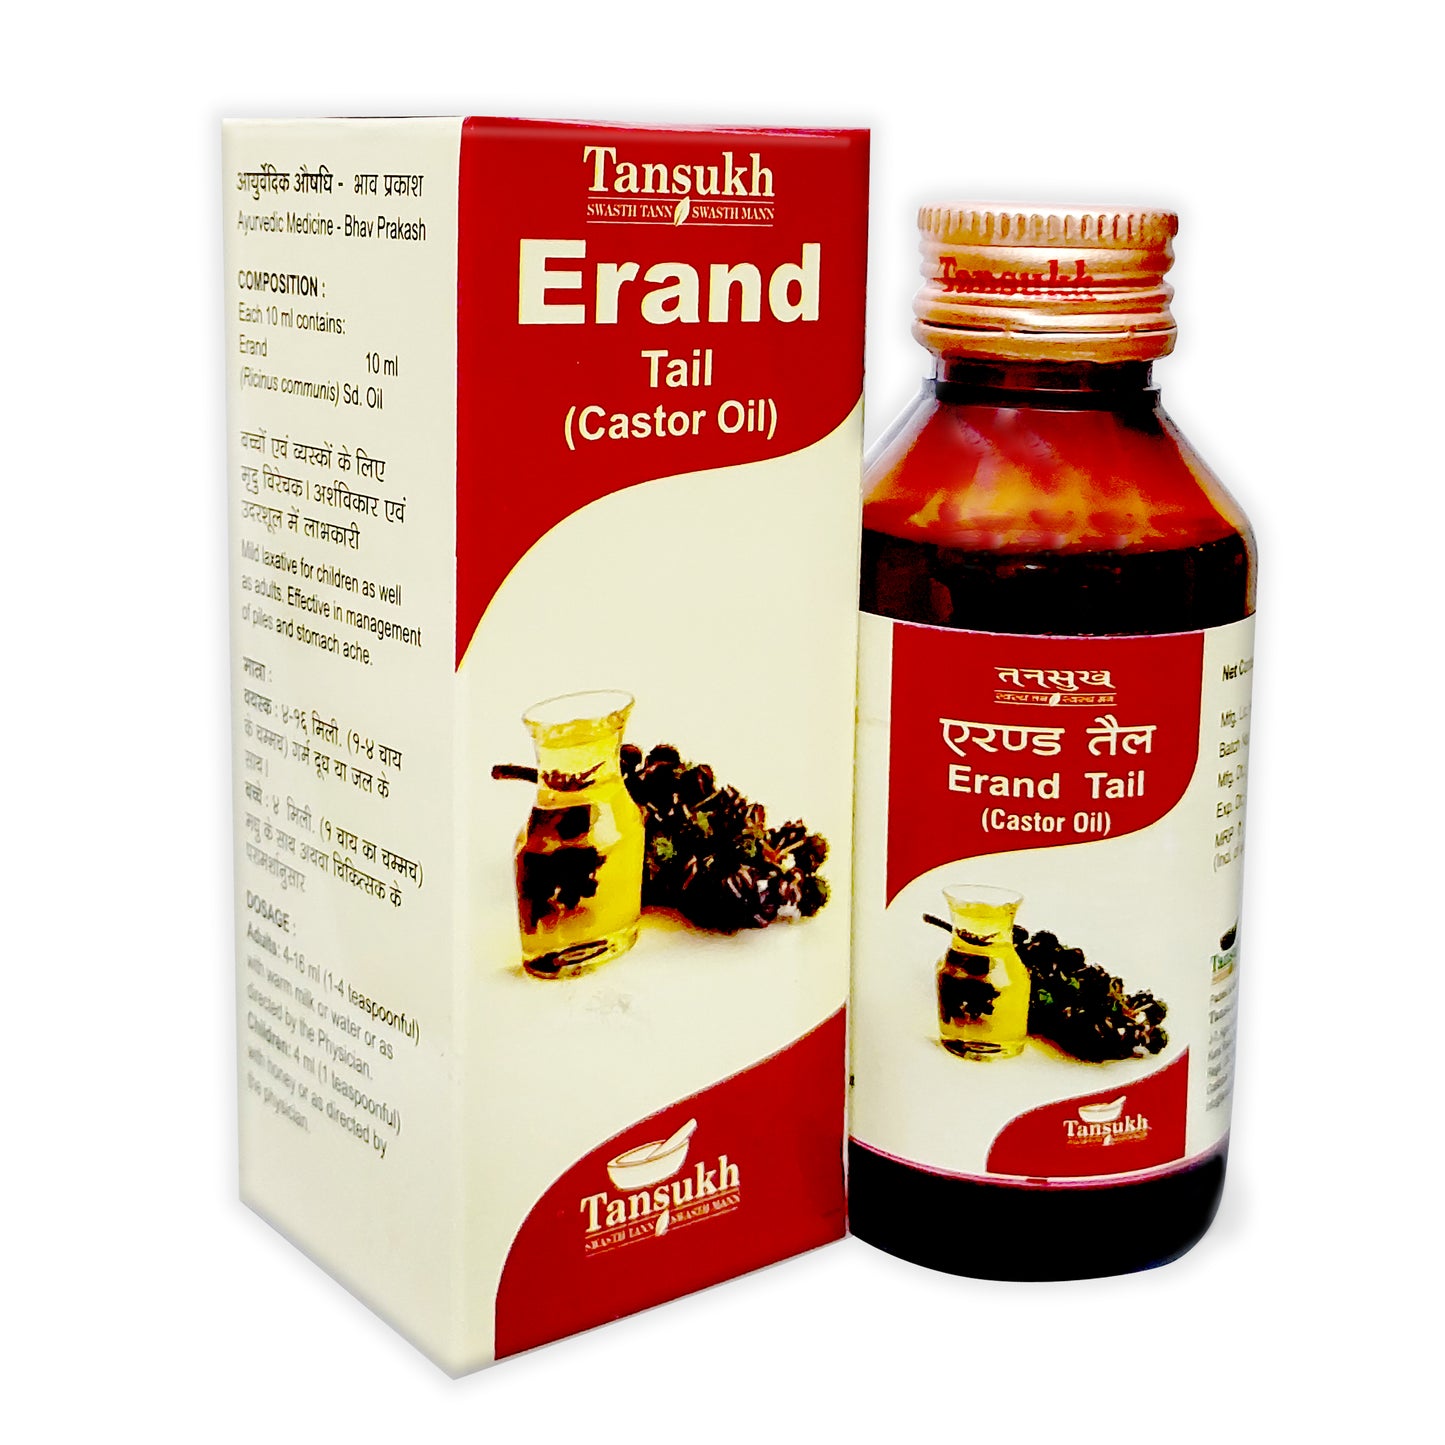 Erand Tail (Castor Oil)